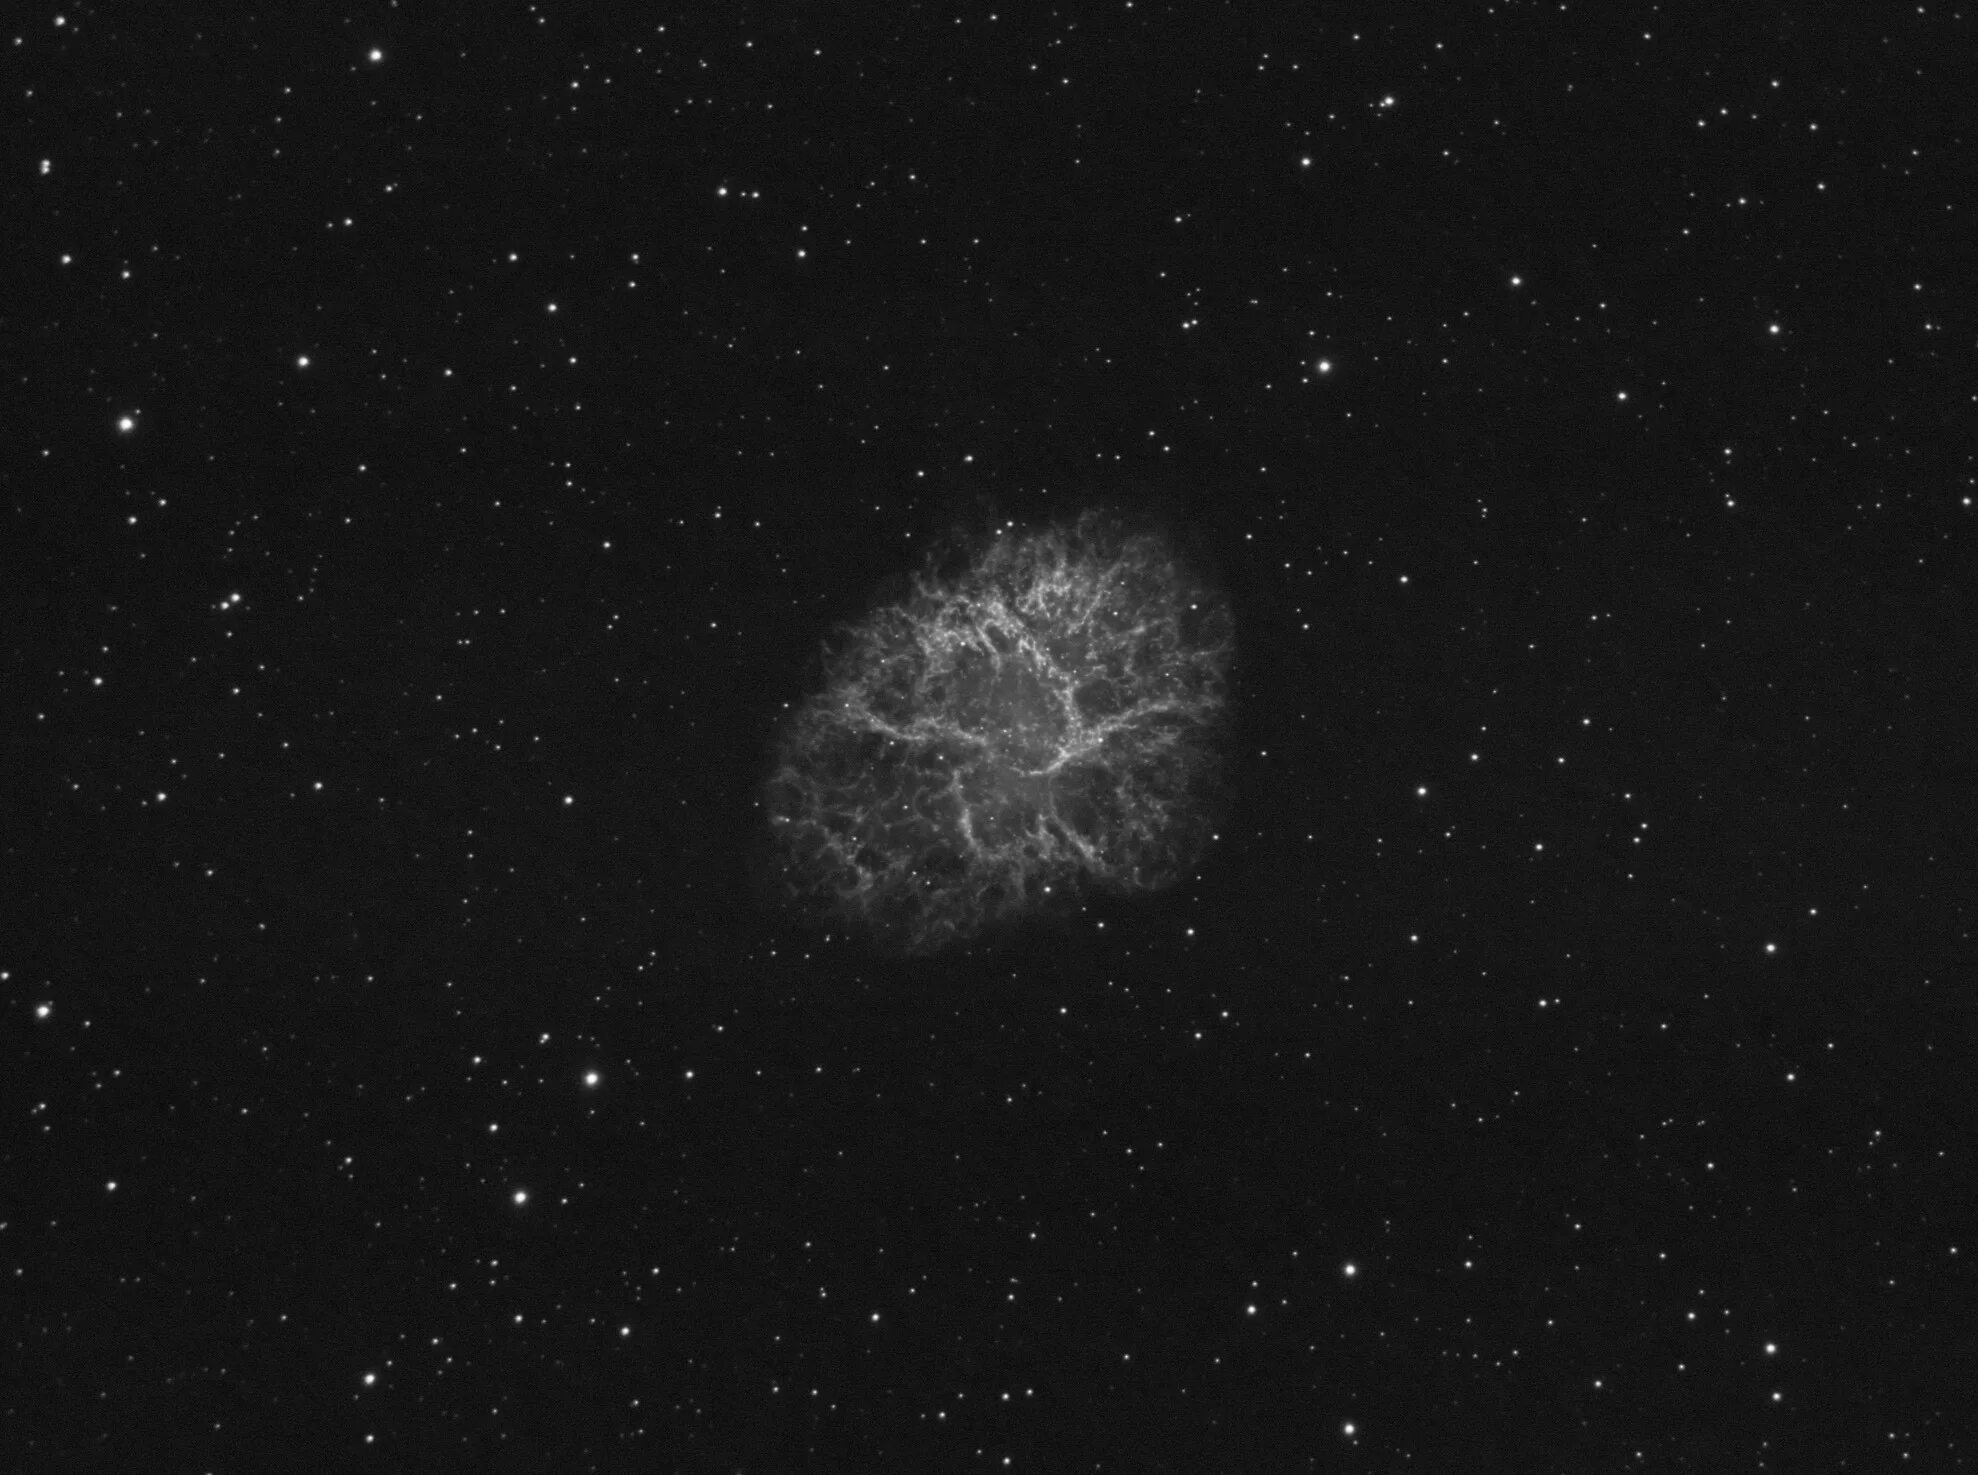 Two nights ago. Галактика Крабовидная туманность. Крабовидная туманность в телескоп. SN 1054 Крабовидная туманность. Созвездие Телец Крабовидная туманность.